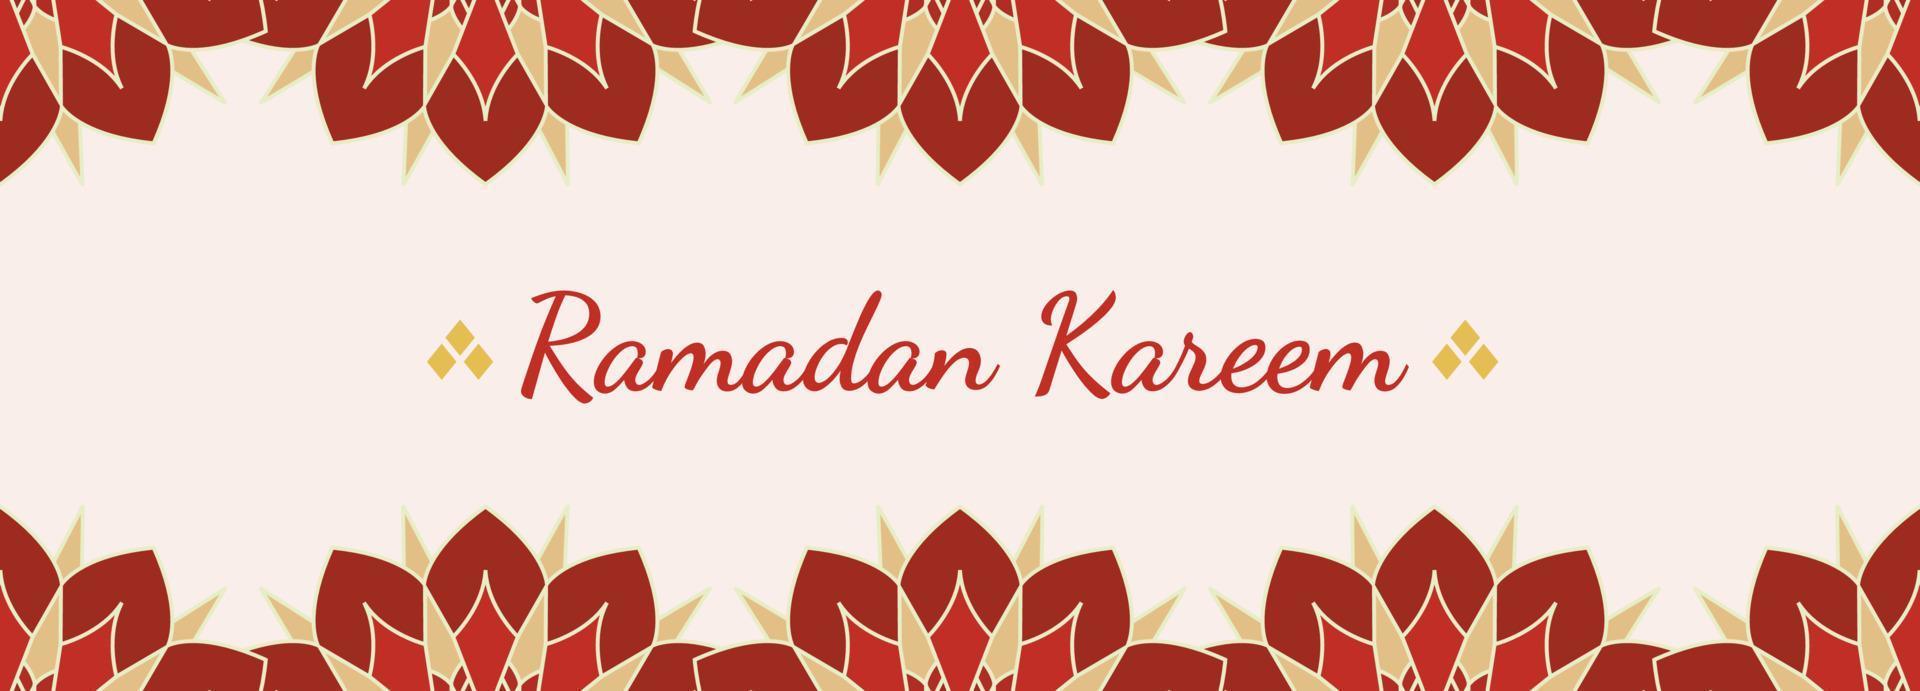 rojo Ramadán kareem bandera islámico modelo antecedentes modelo vector